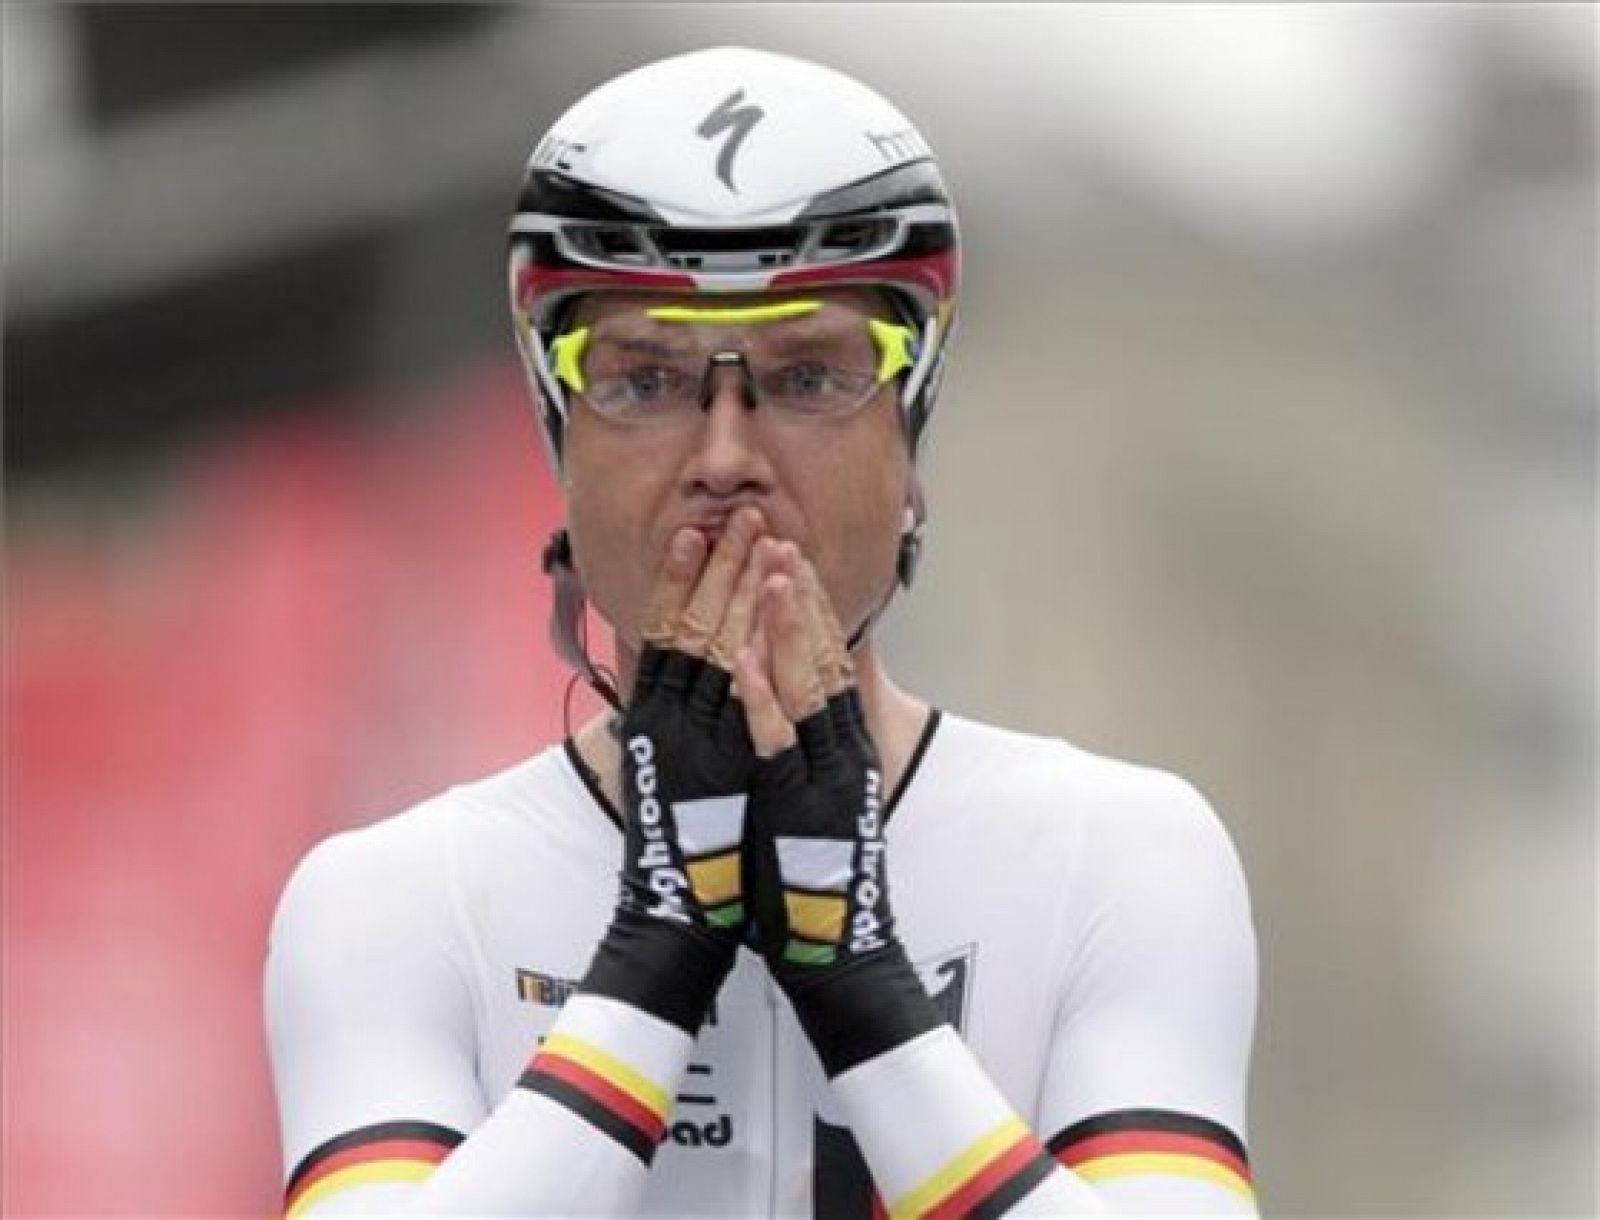 El ciclista alemán, Tony Martin, fue campeón del mundo contrarreloj en 2011.